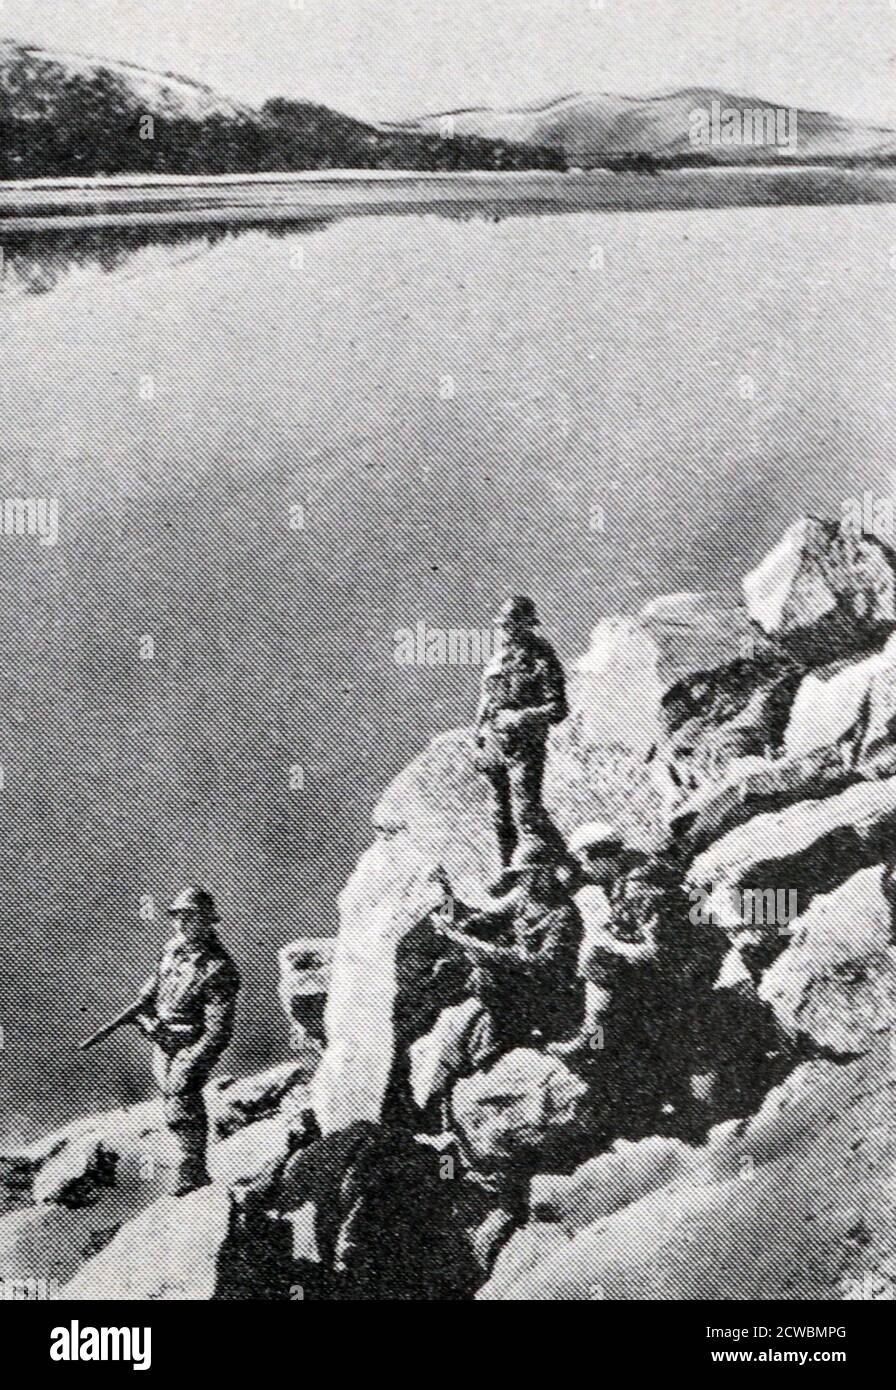 Fotografia in bianco e nero della Campagna norvegese della seconda guerra mondiale, da aprile a giugno 1940; un gruppo di soldati alpini fornisce sorveglianza sul fiordo. Foto Stock